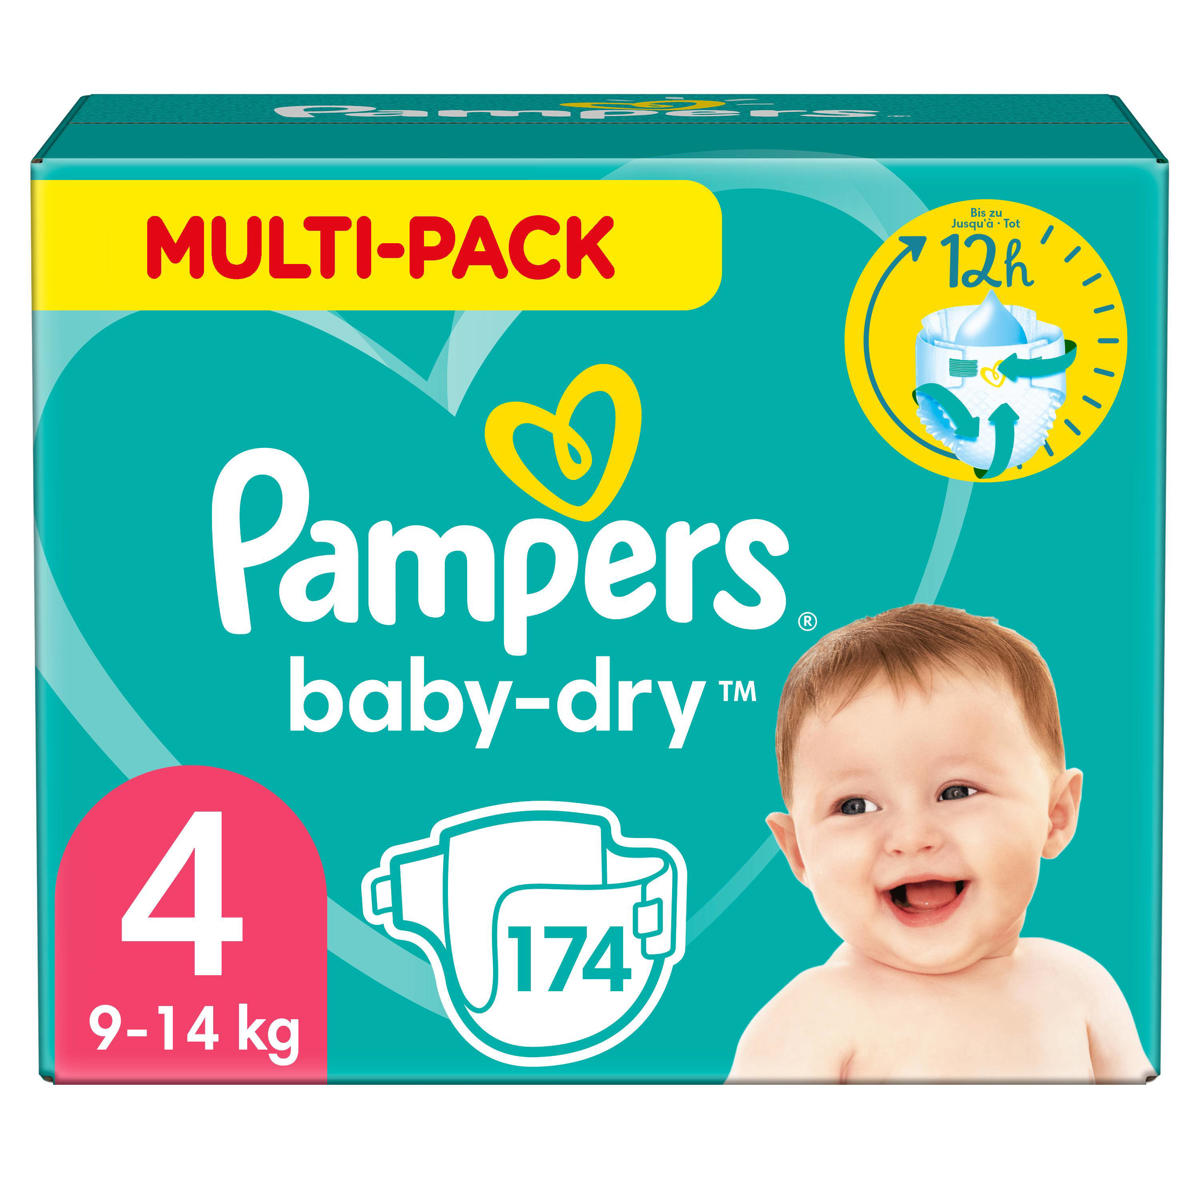 Leerling Sjah Mediaan Pampers Baby-Dry Luiers - Maat 4 (9-14 kg) - 174 stuks - Multi-Pack |  wehkamp